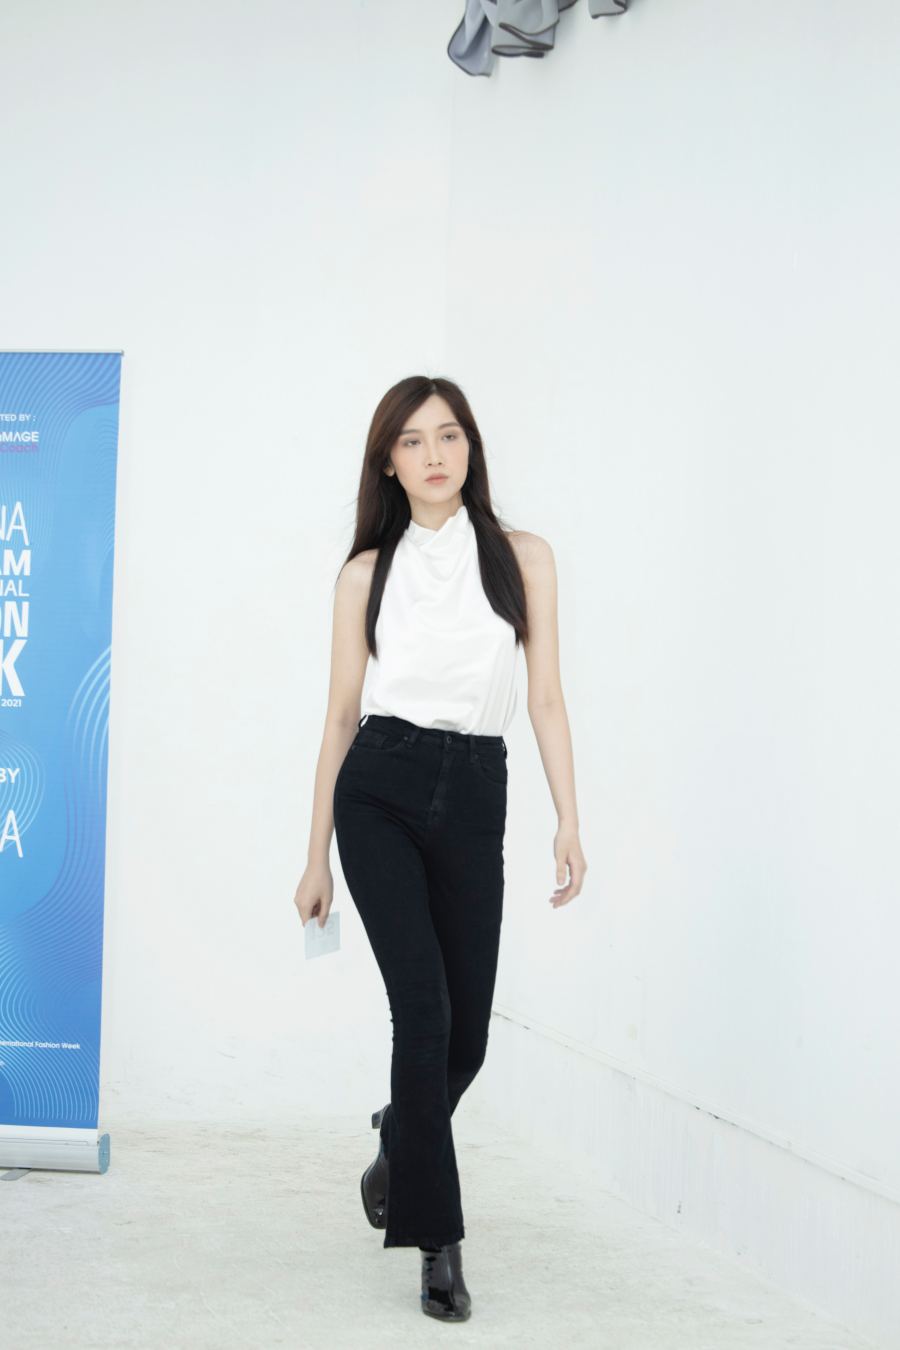 Hoa hậu Đỗ Thị Hà tham gia casting trong trang phục đơn giản, nhan sắc xinh tươi của cô nhận được nhiều lời khen ngợi.